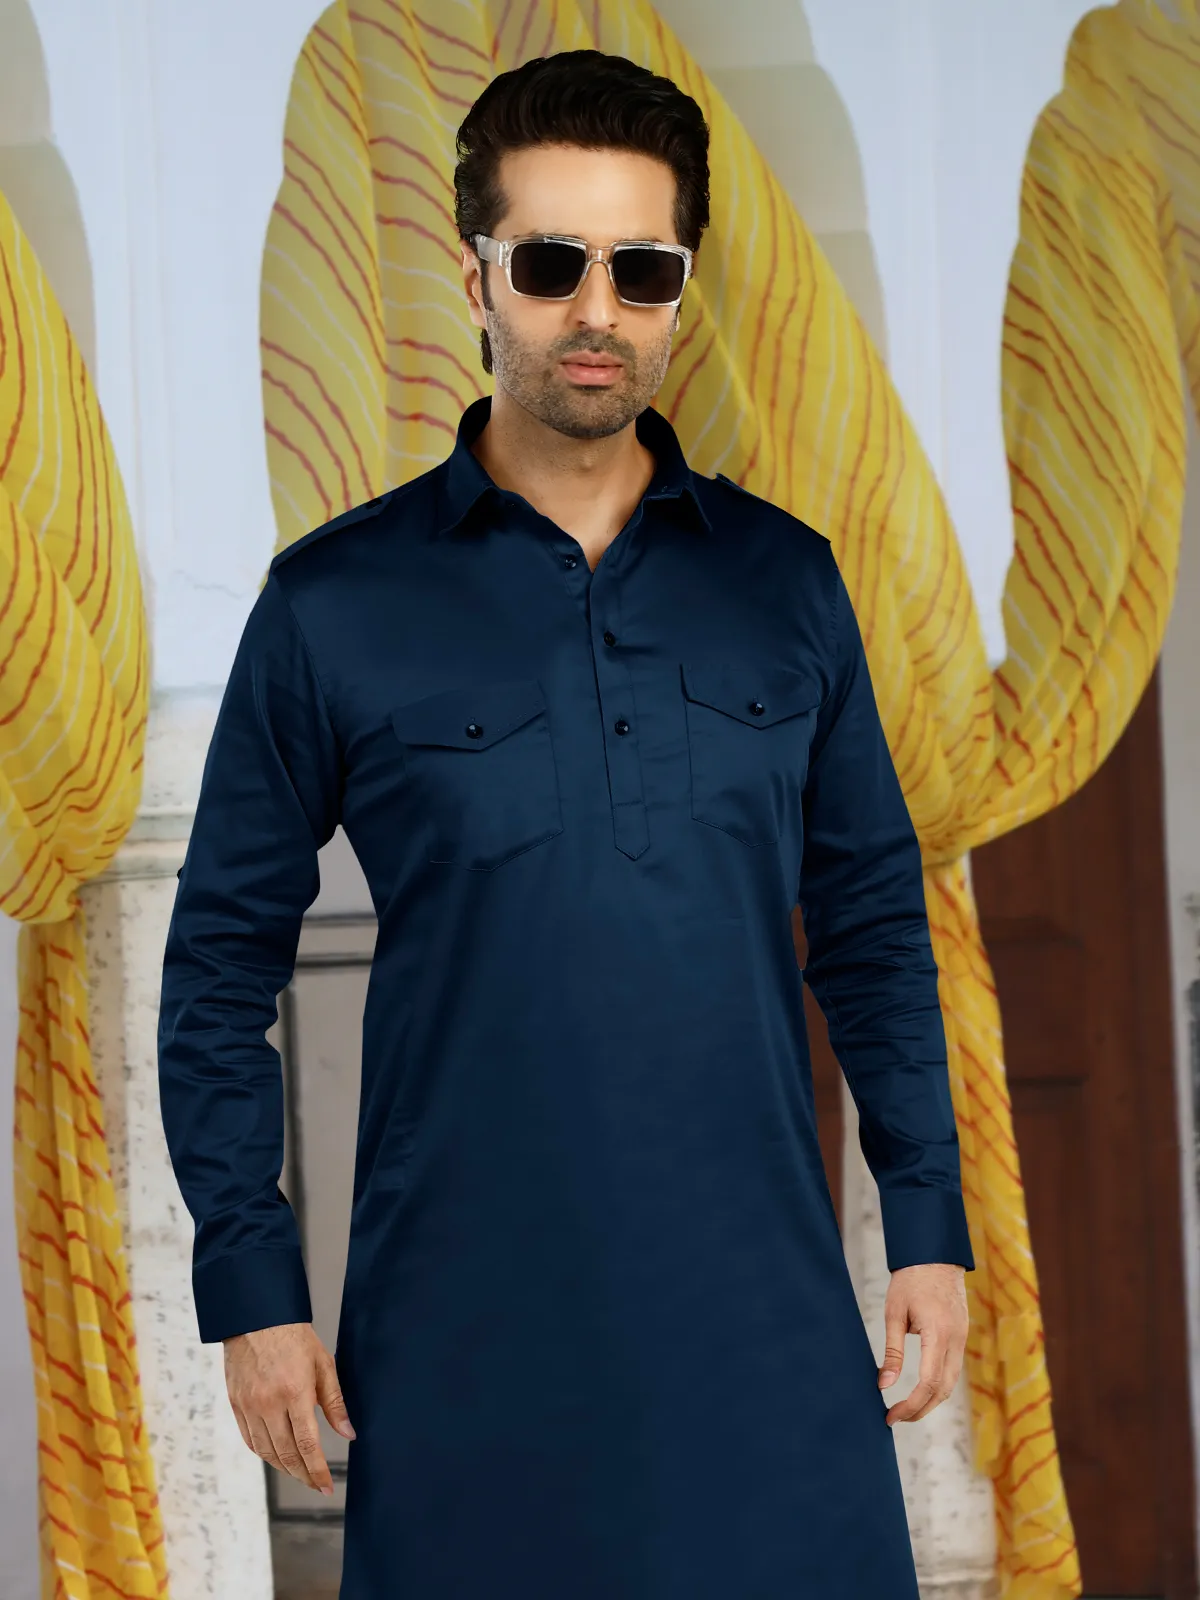 Latest teal blue cotton plain pathani suit